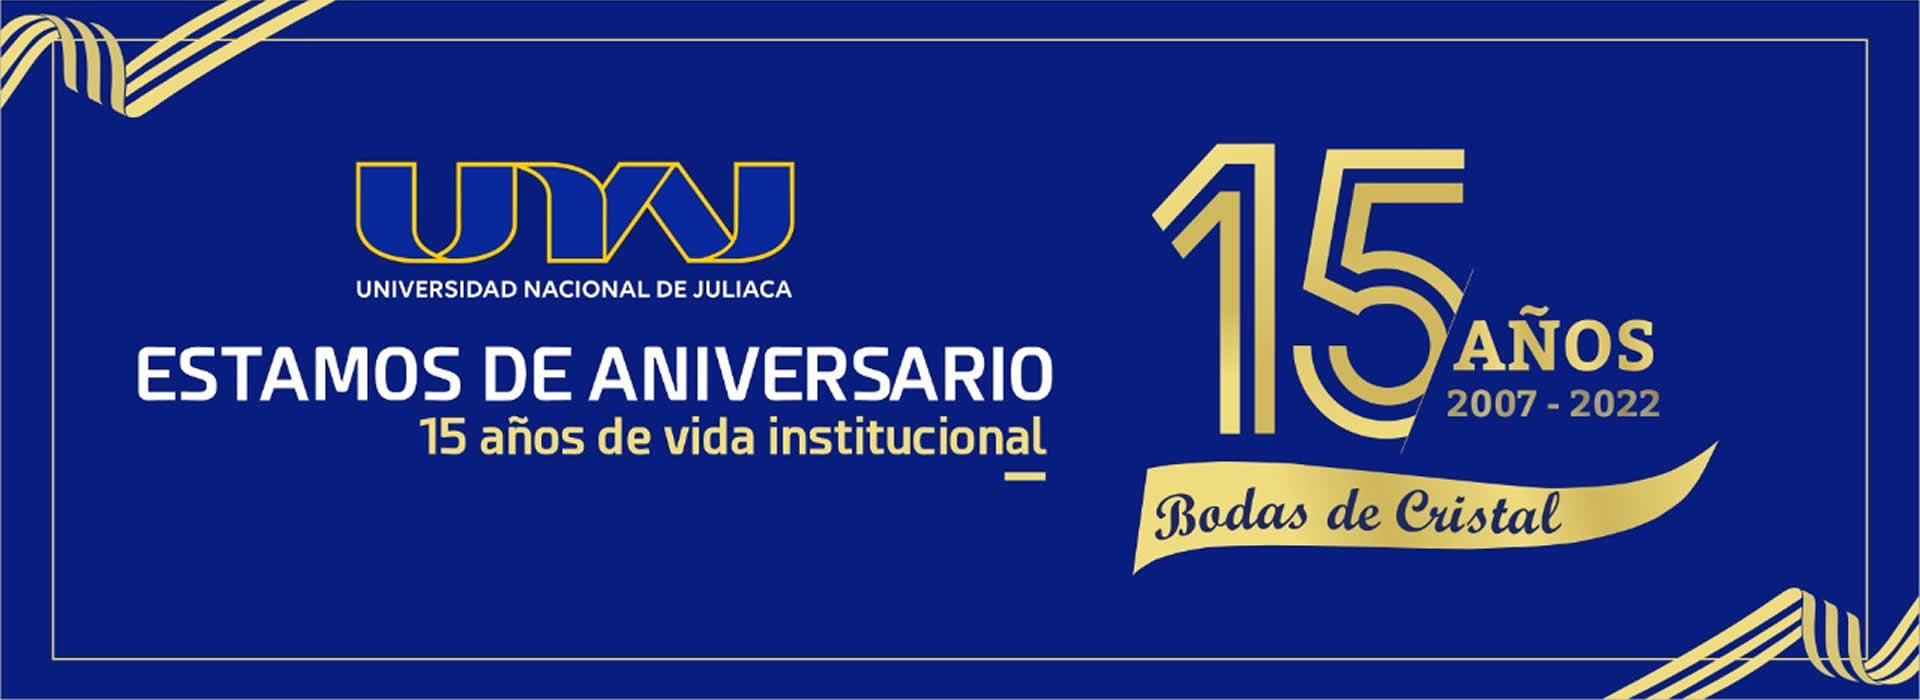 Aniversario de la Universidad Nacional de Juliaca - UNAJ